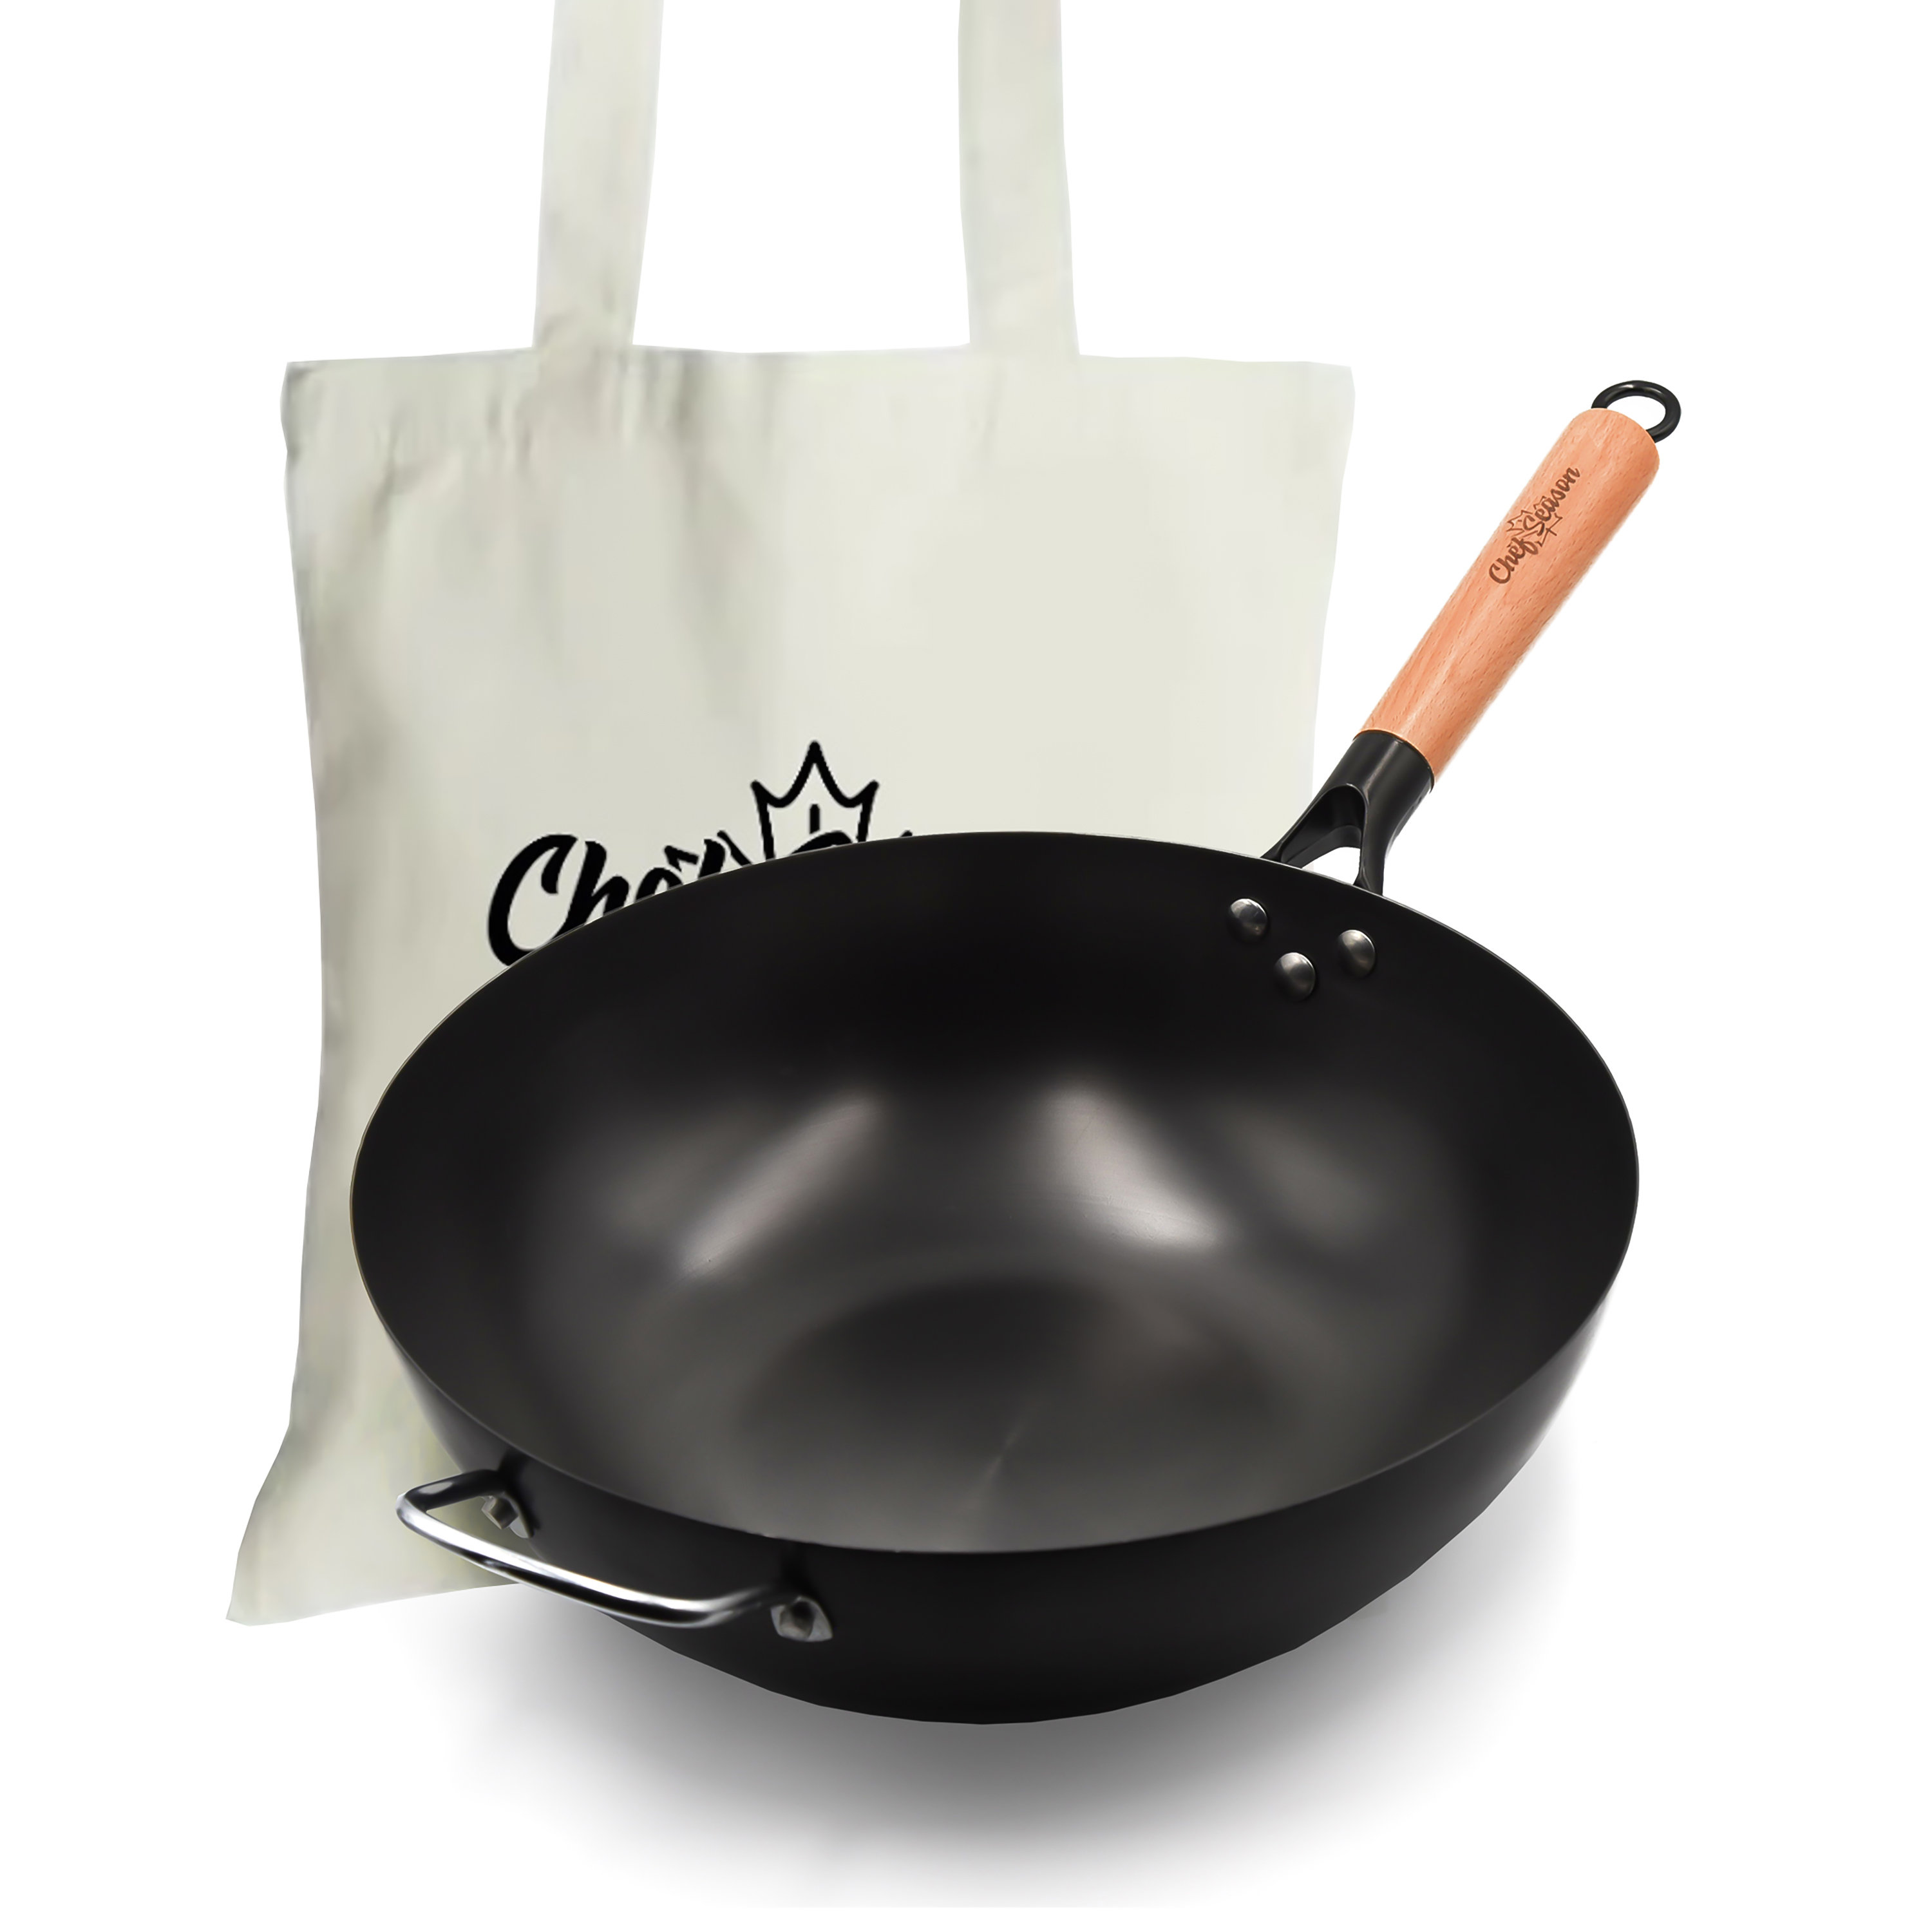 ChefSeason Carbon Steel Wok, Flat Bottom, 100% Coating Free, Pre-seasoned,  Free Tote Bag & Reviews